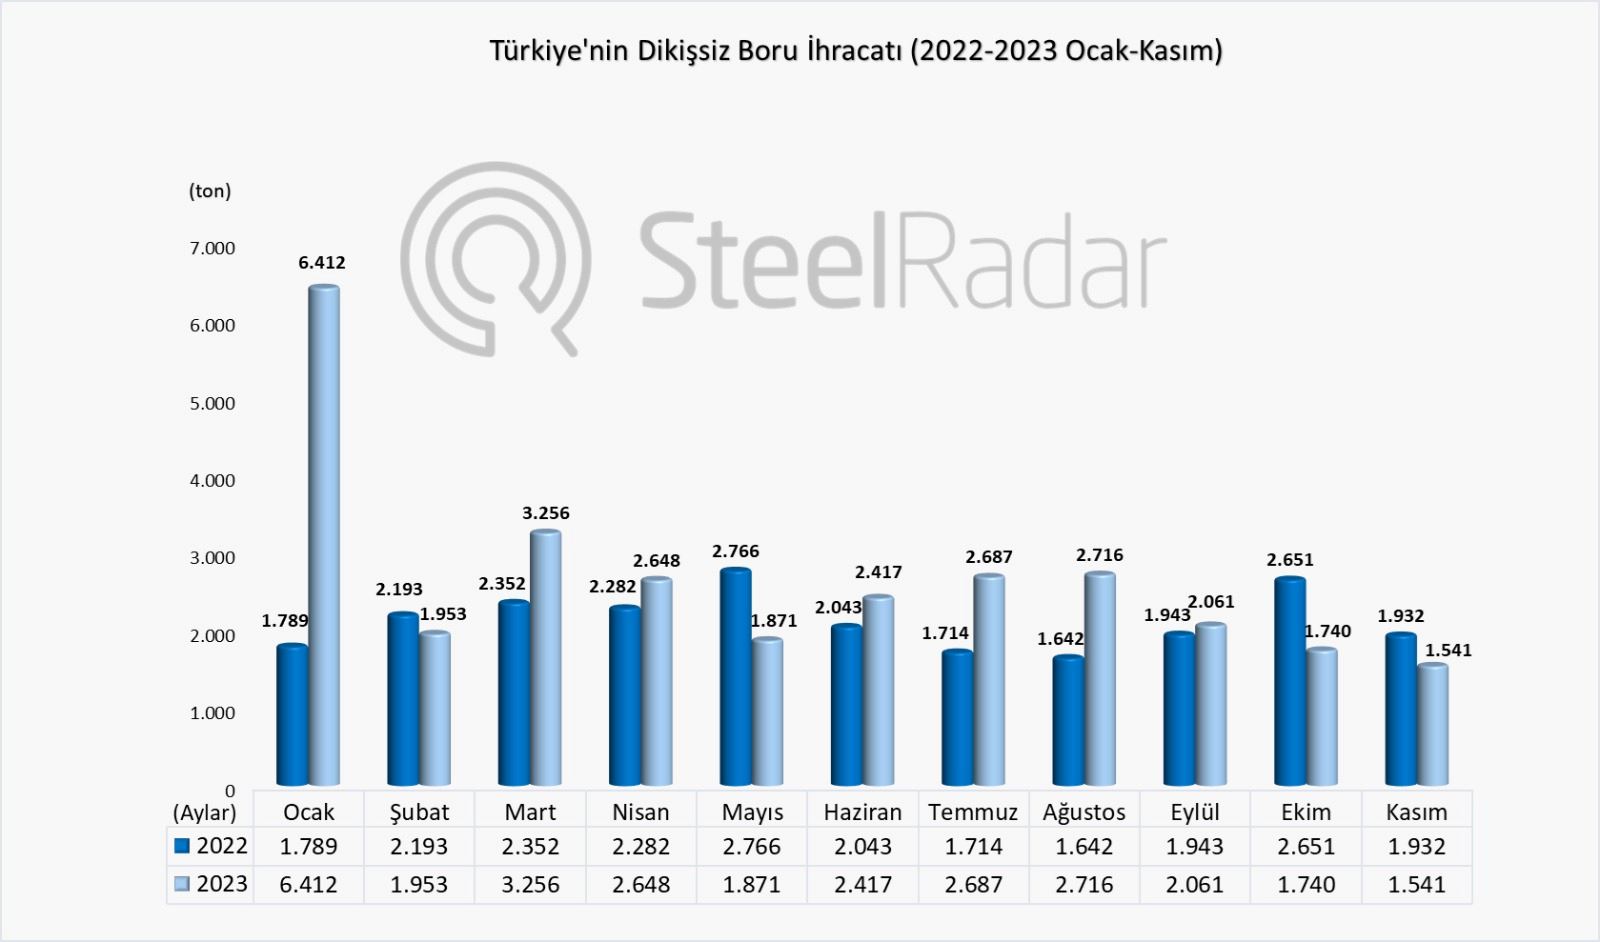  Türkiye'nin dikişsiz boru ihracatı kasım ayında, son 11 ayın en düşük seviyesine indi